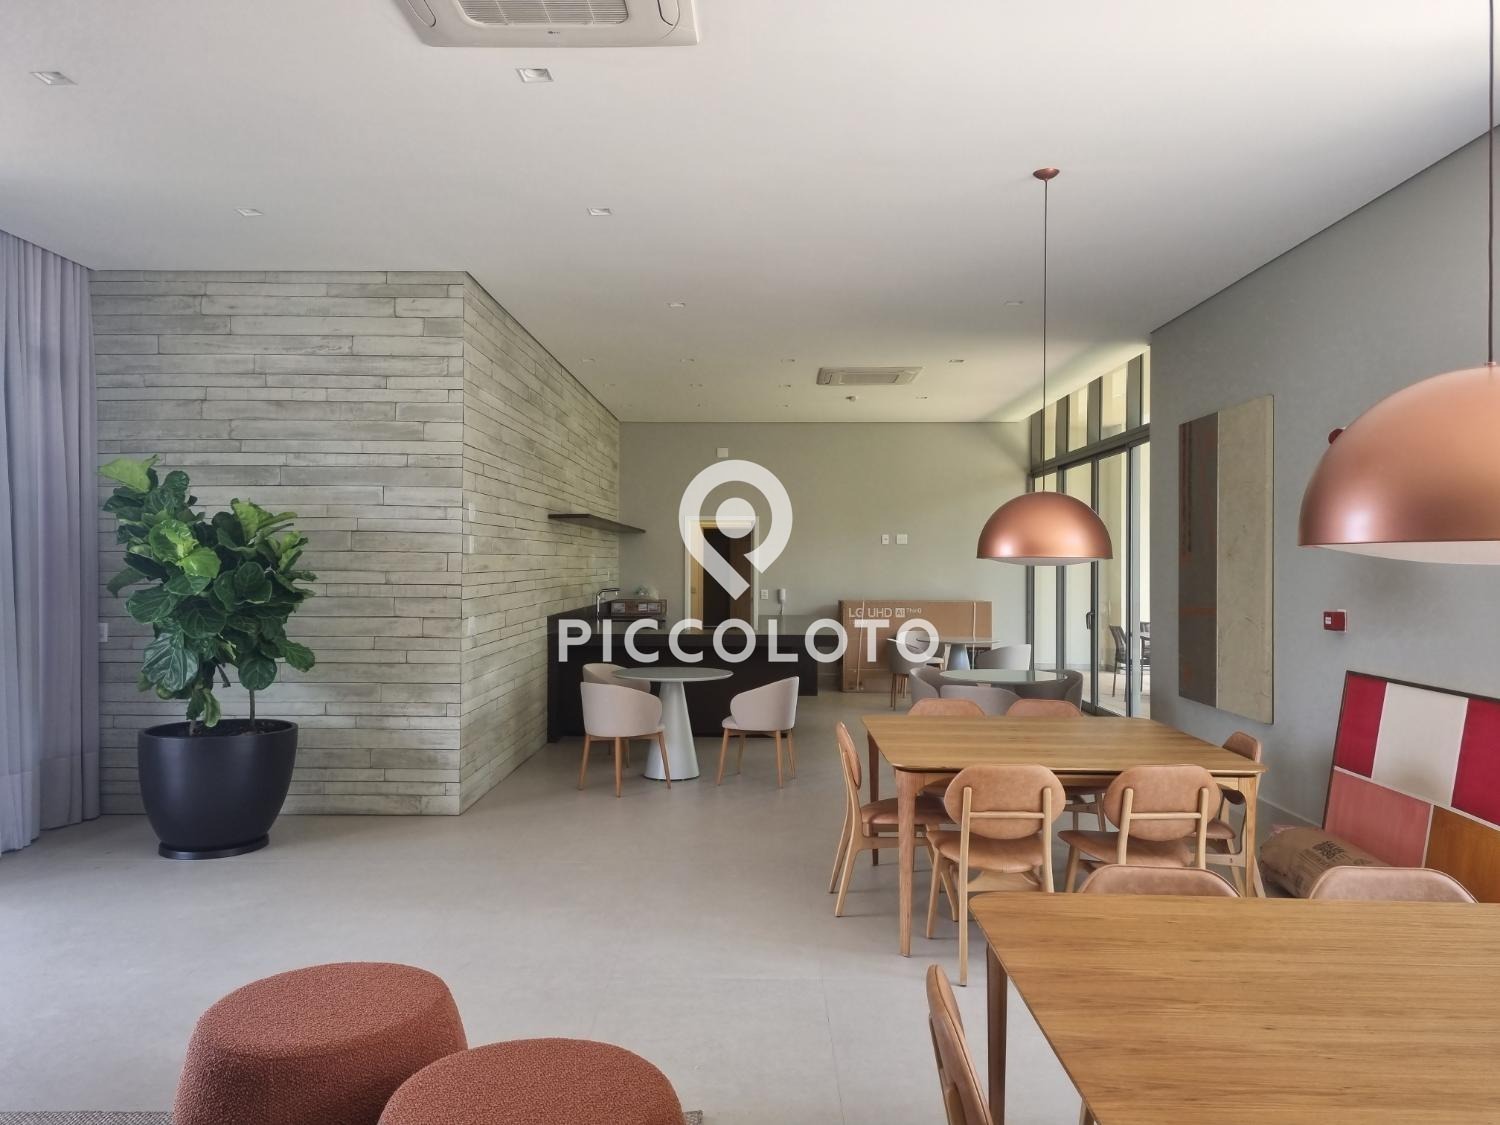 Piccoloto -Apartamento à venda no Nova Campinas em Campinas